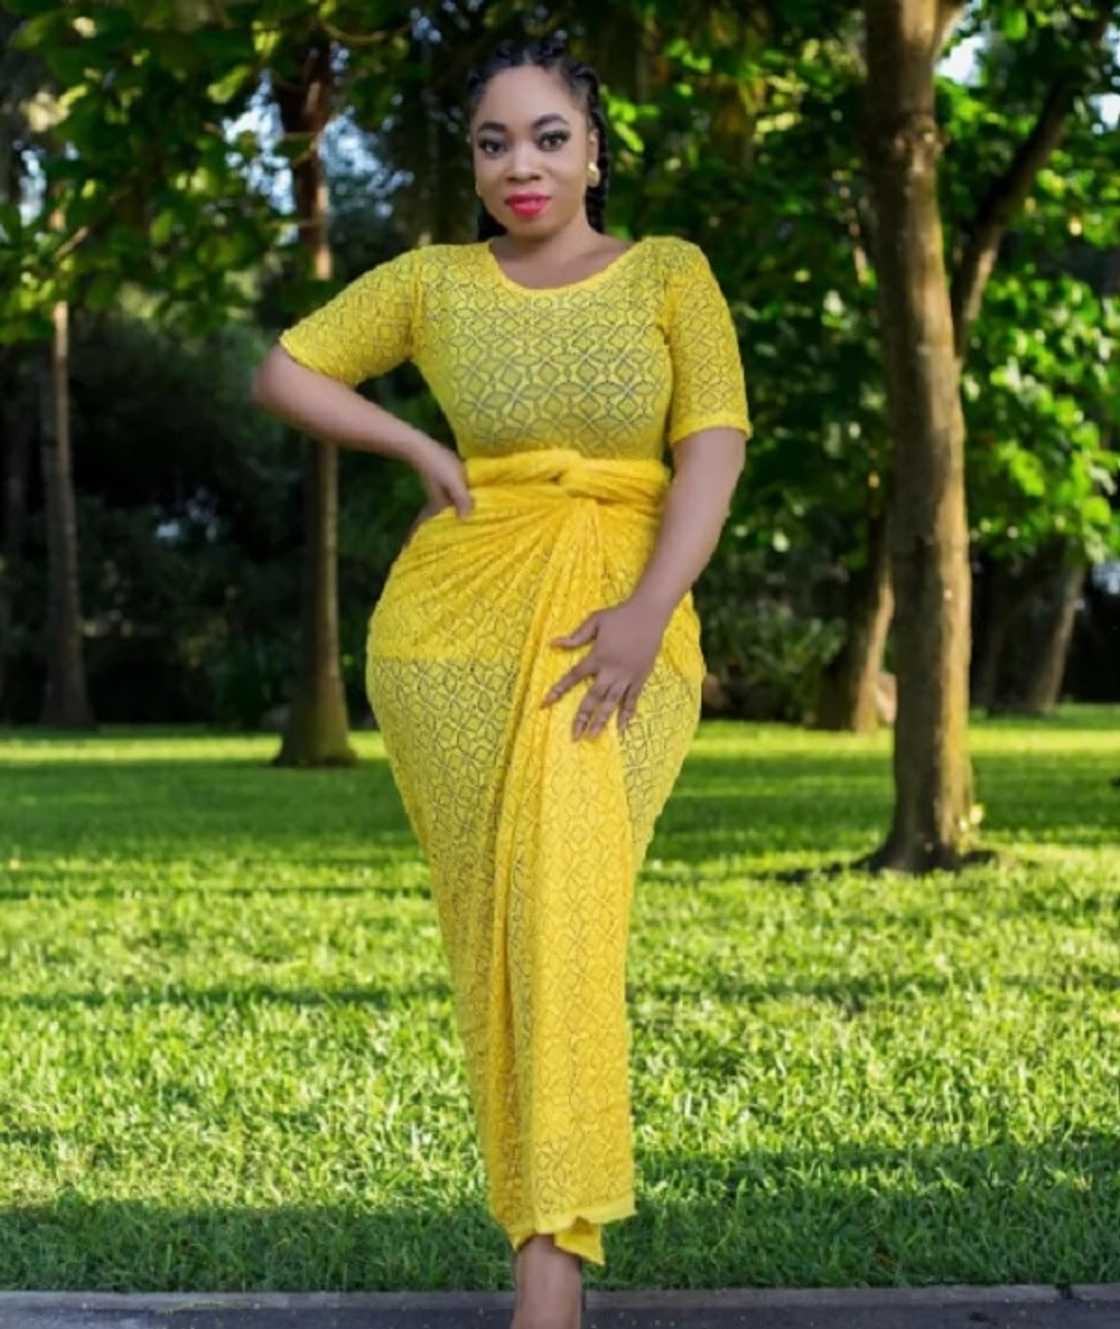 Moesha Boduong wearing a yellow dress